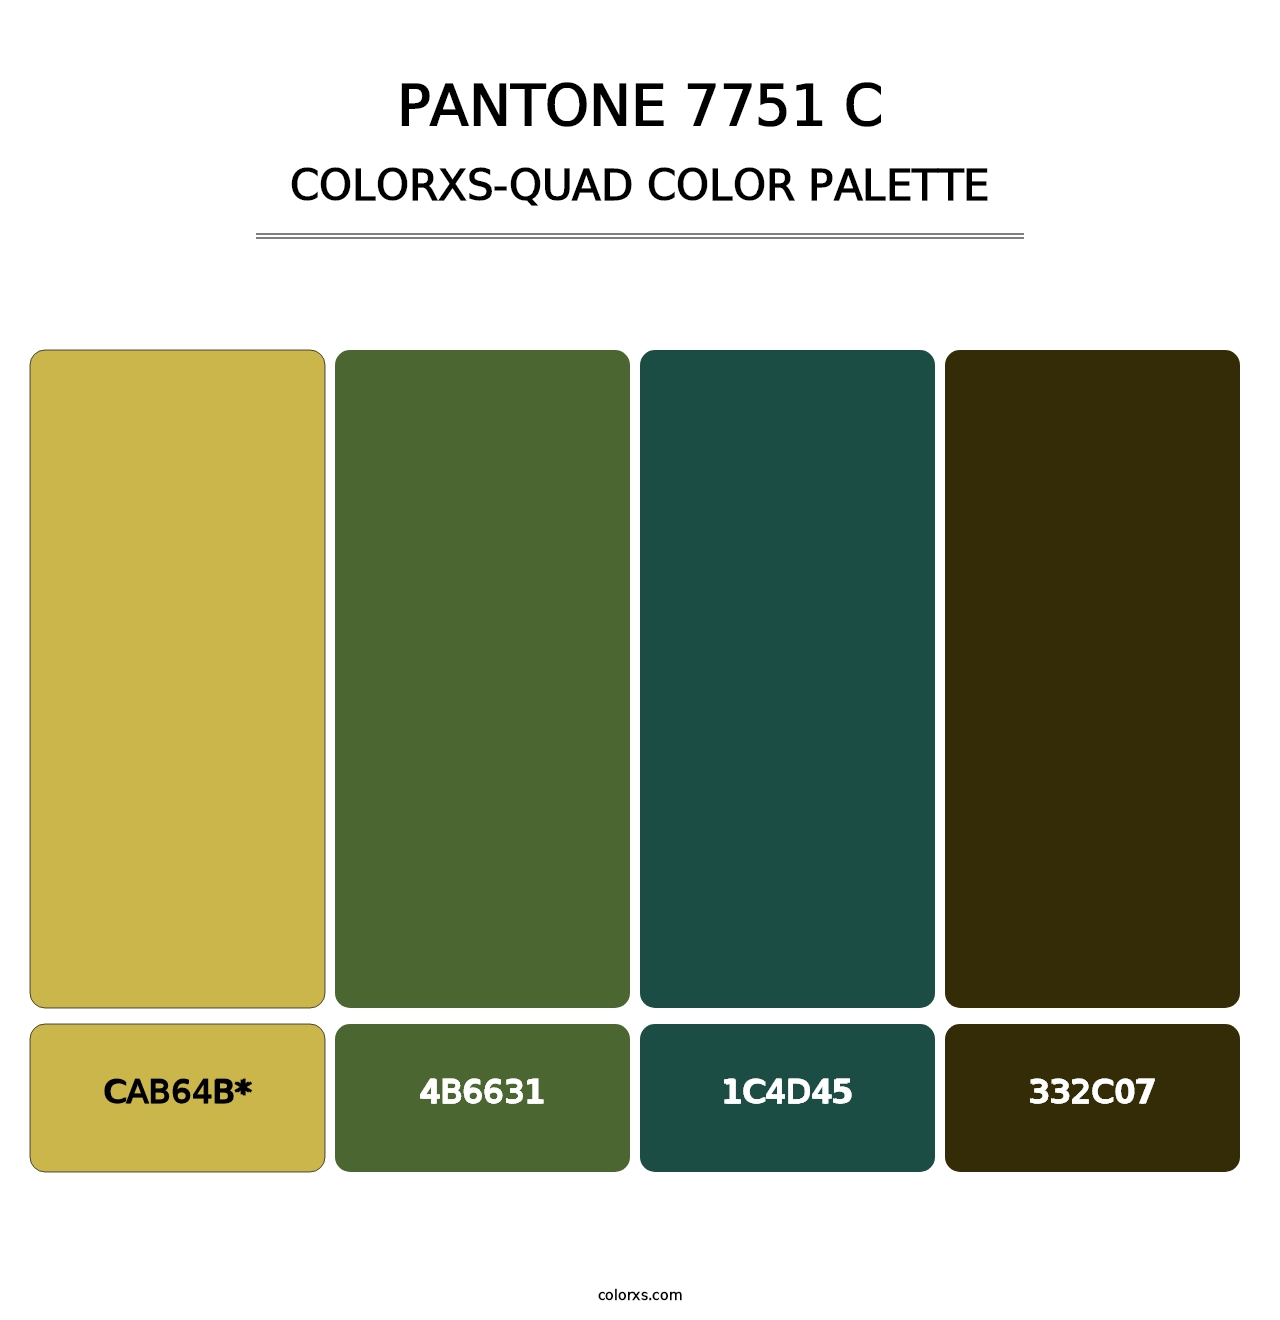 PANTONE 7751 C - Colorxs Quad Palette